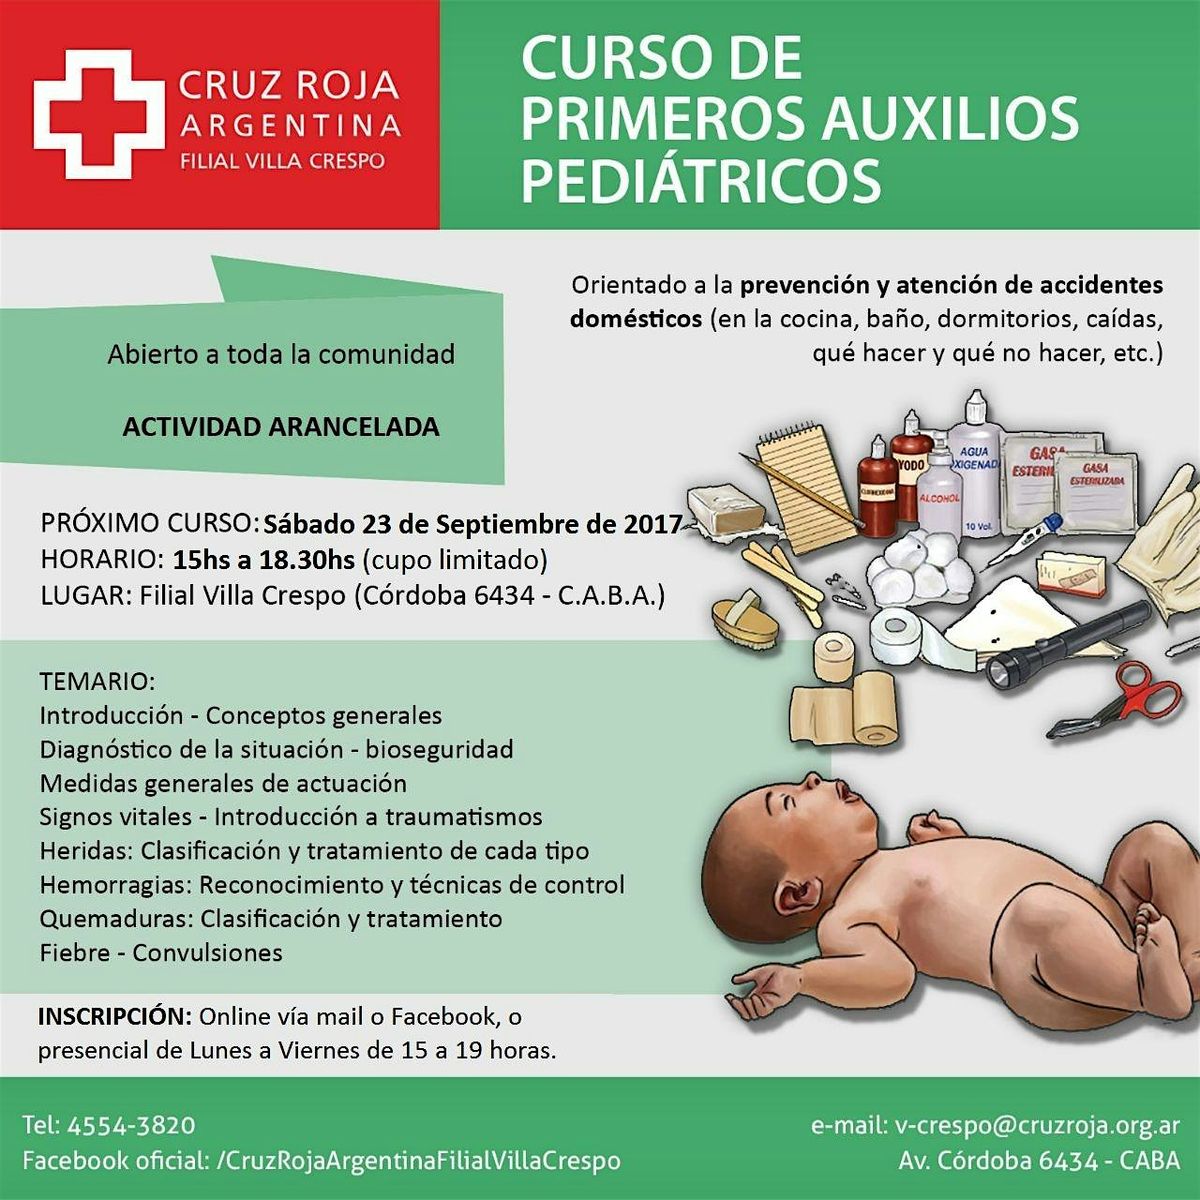 Curso de RCP en Cruz Roja (lunes 20-05-24) 18 a 22 hs - Duraci\u00f3n 4 hs.